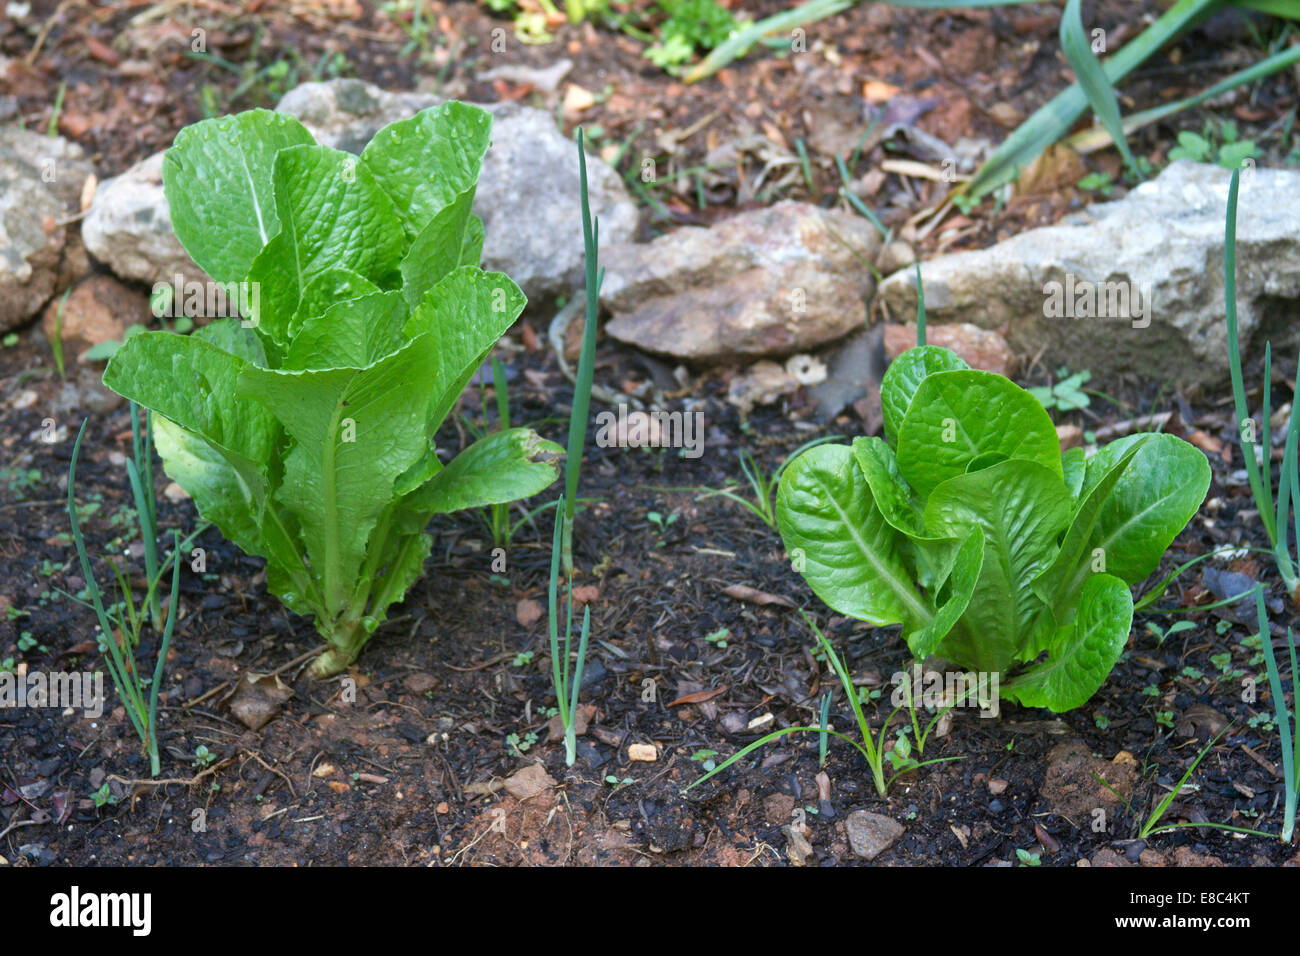 Compagno organici giardinaggio crescente lattuga romana accanto alle cipolle per scoraggiare i parassiti Foto Stock